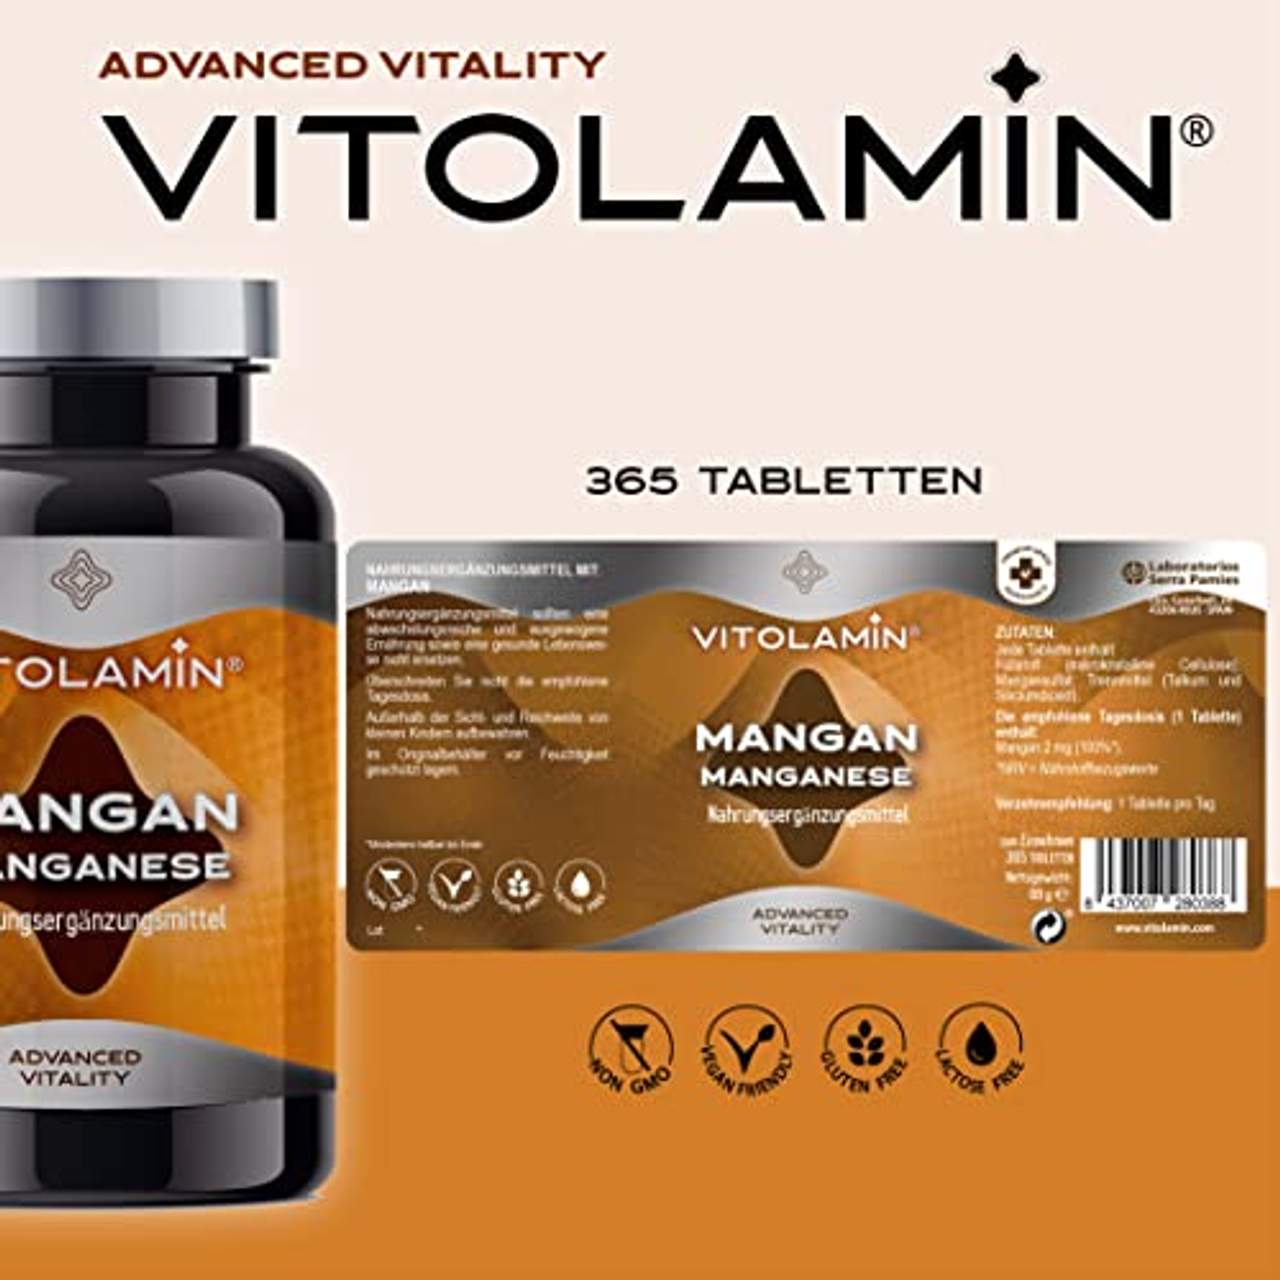 Vitolamin Mangan 365 Stärkt das Bindegewebe